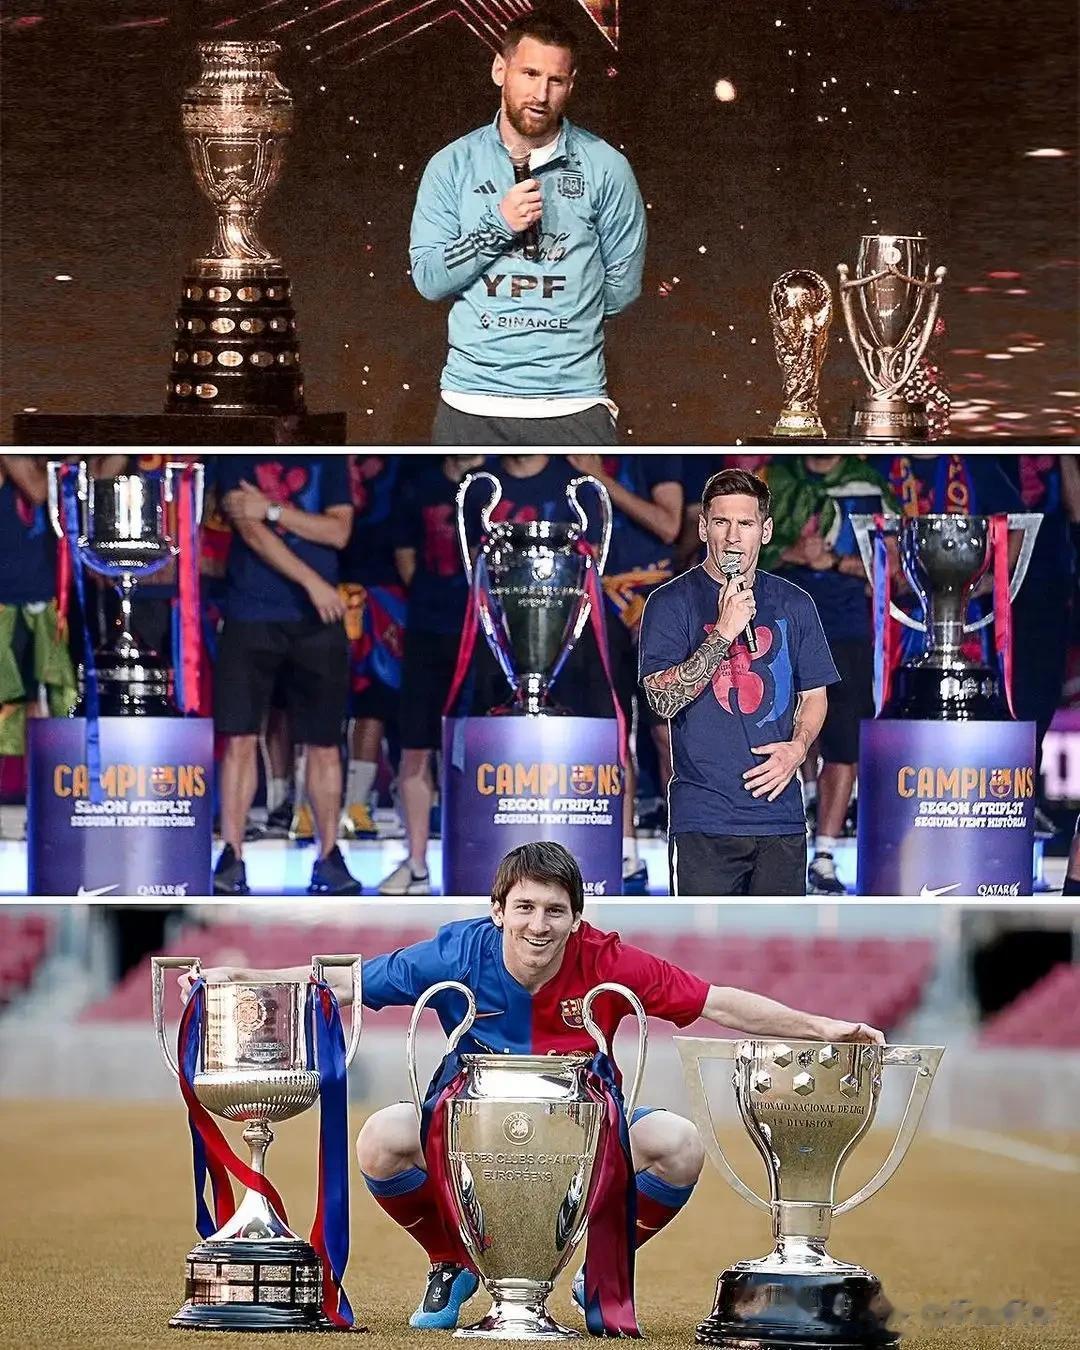 ▶ 2008/09赛季：西甲冠军、欧冠冠军、国王杯冠军 
▶ 2014/15赛季(1)